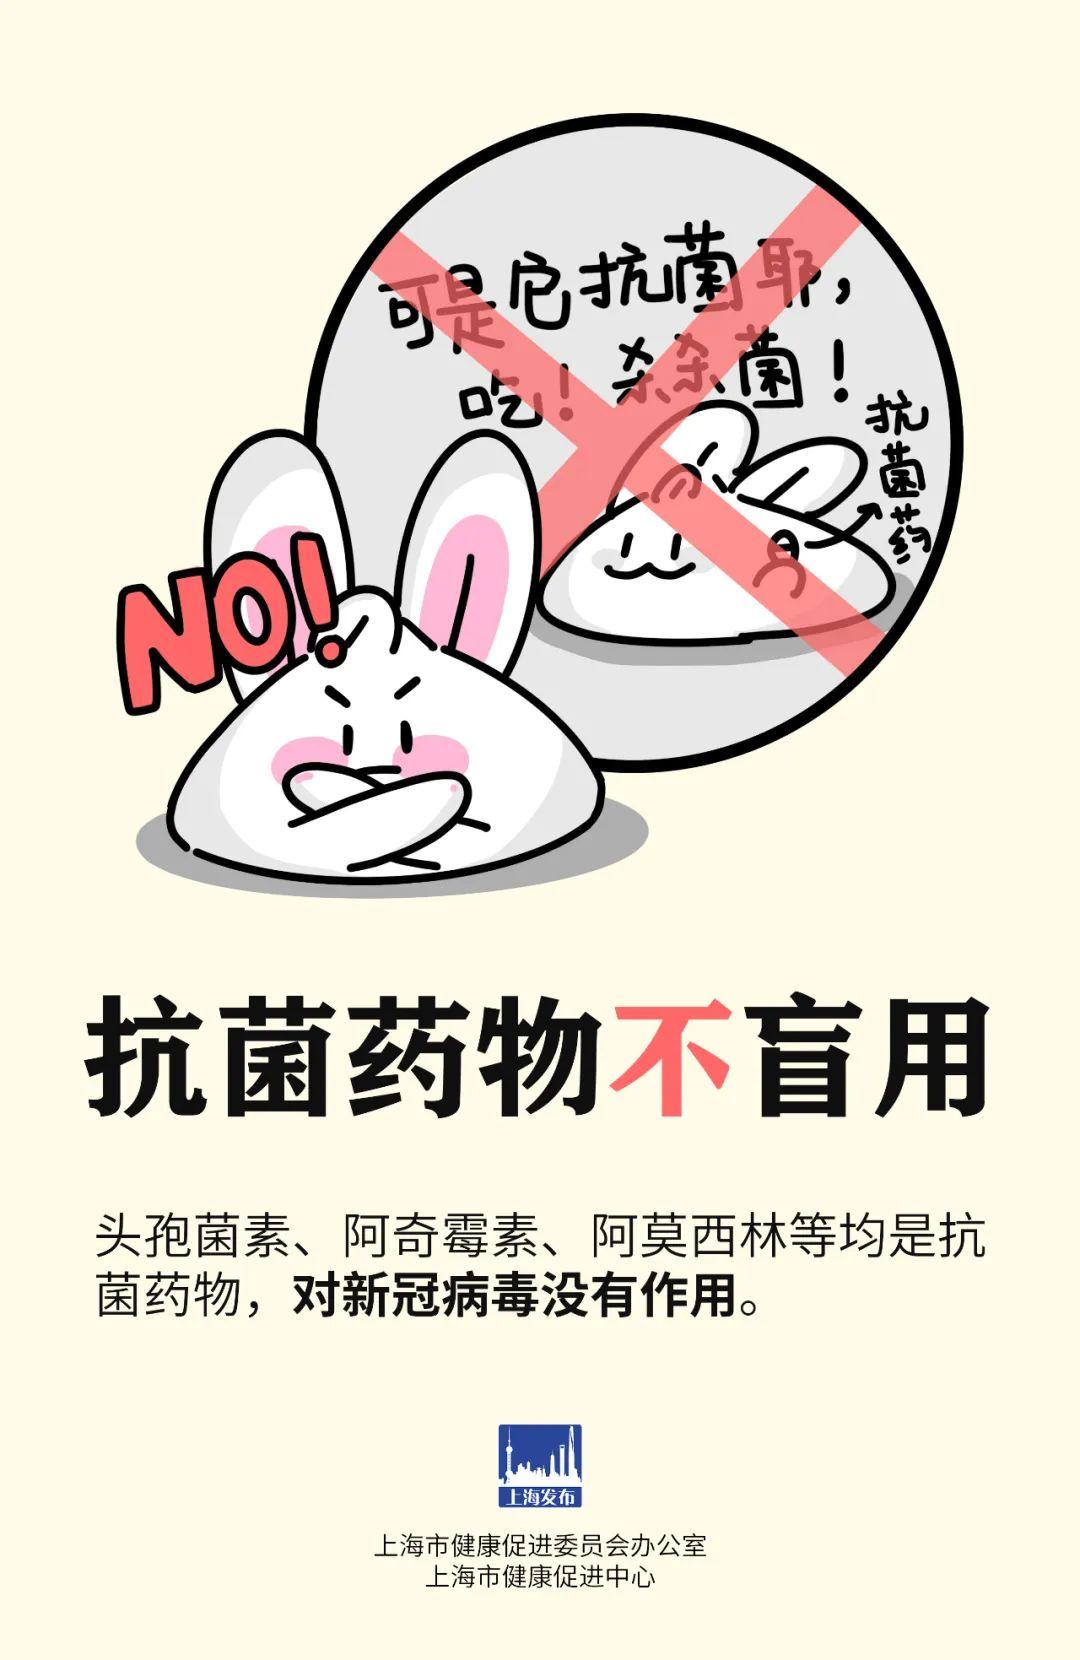 上海發佈：@市民朋友，盲目囤葯不可取，六點提示請收好